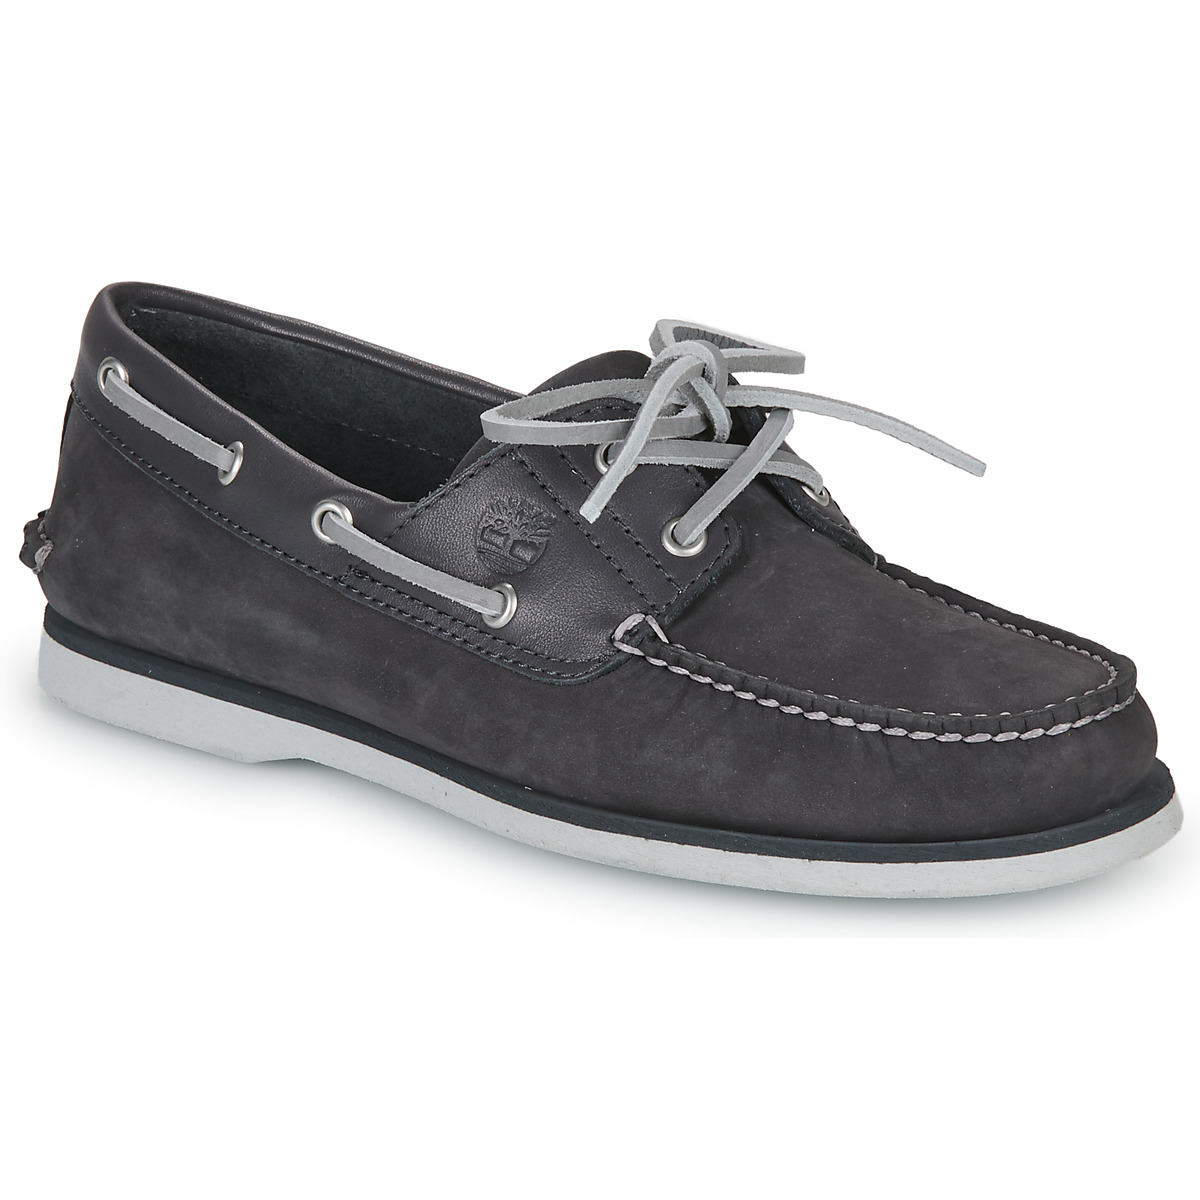 Παπούτσια Άνδρας Boat shoes Timberland CLASSIC BOAT 2 EYE Grey / Άσπρο